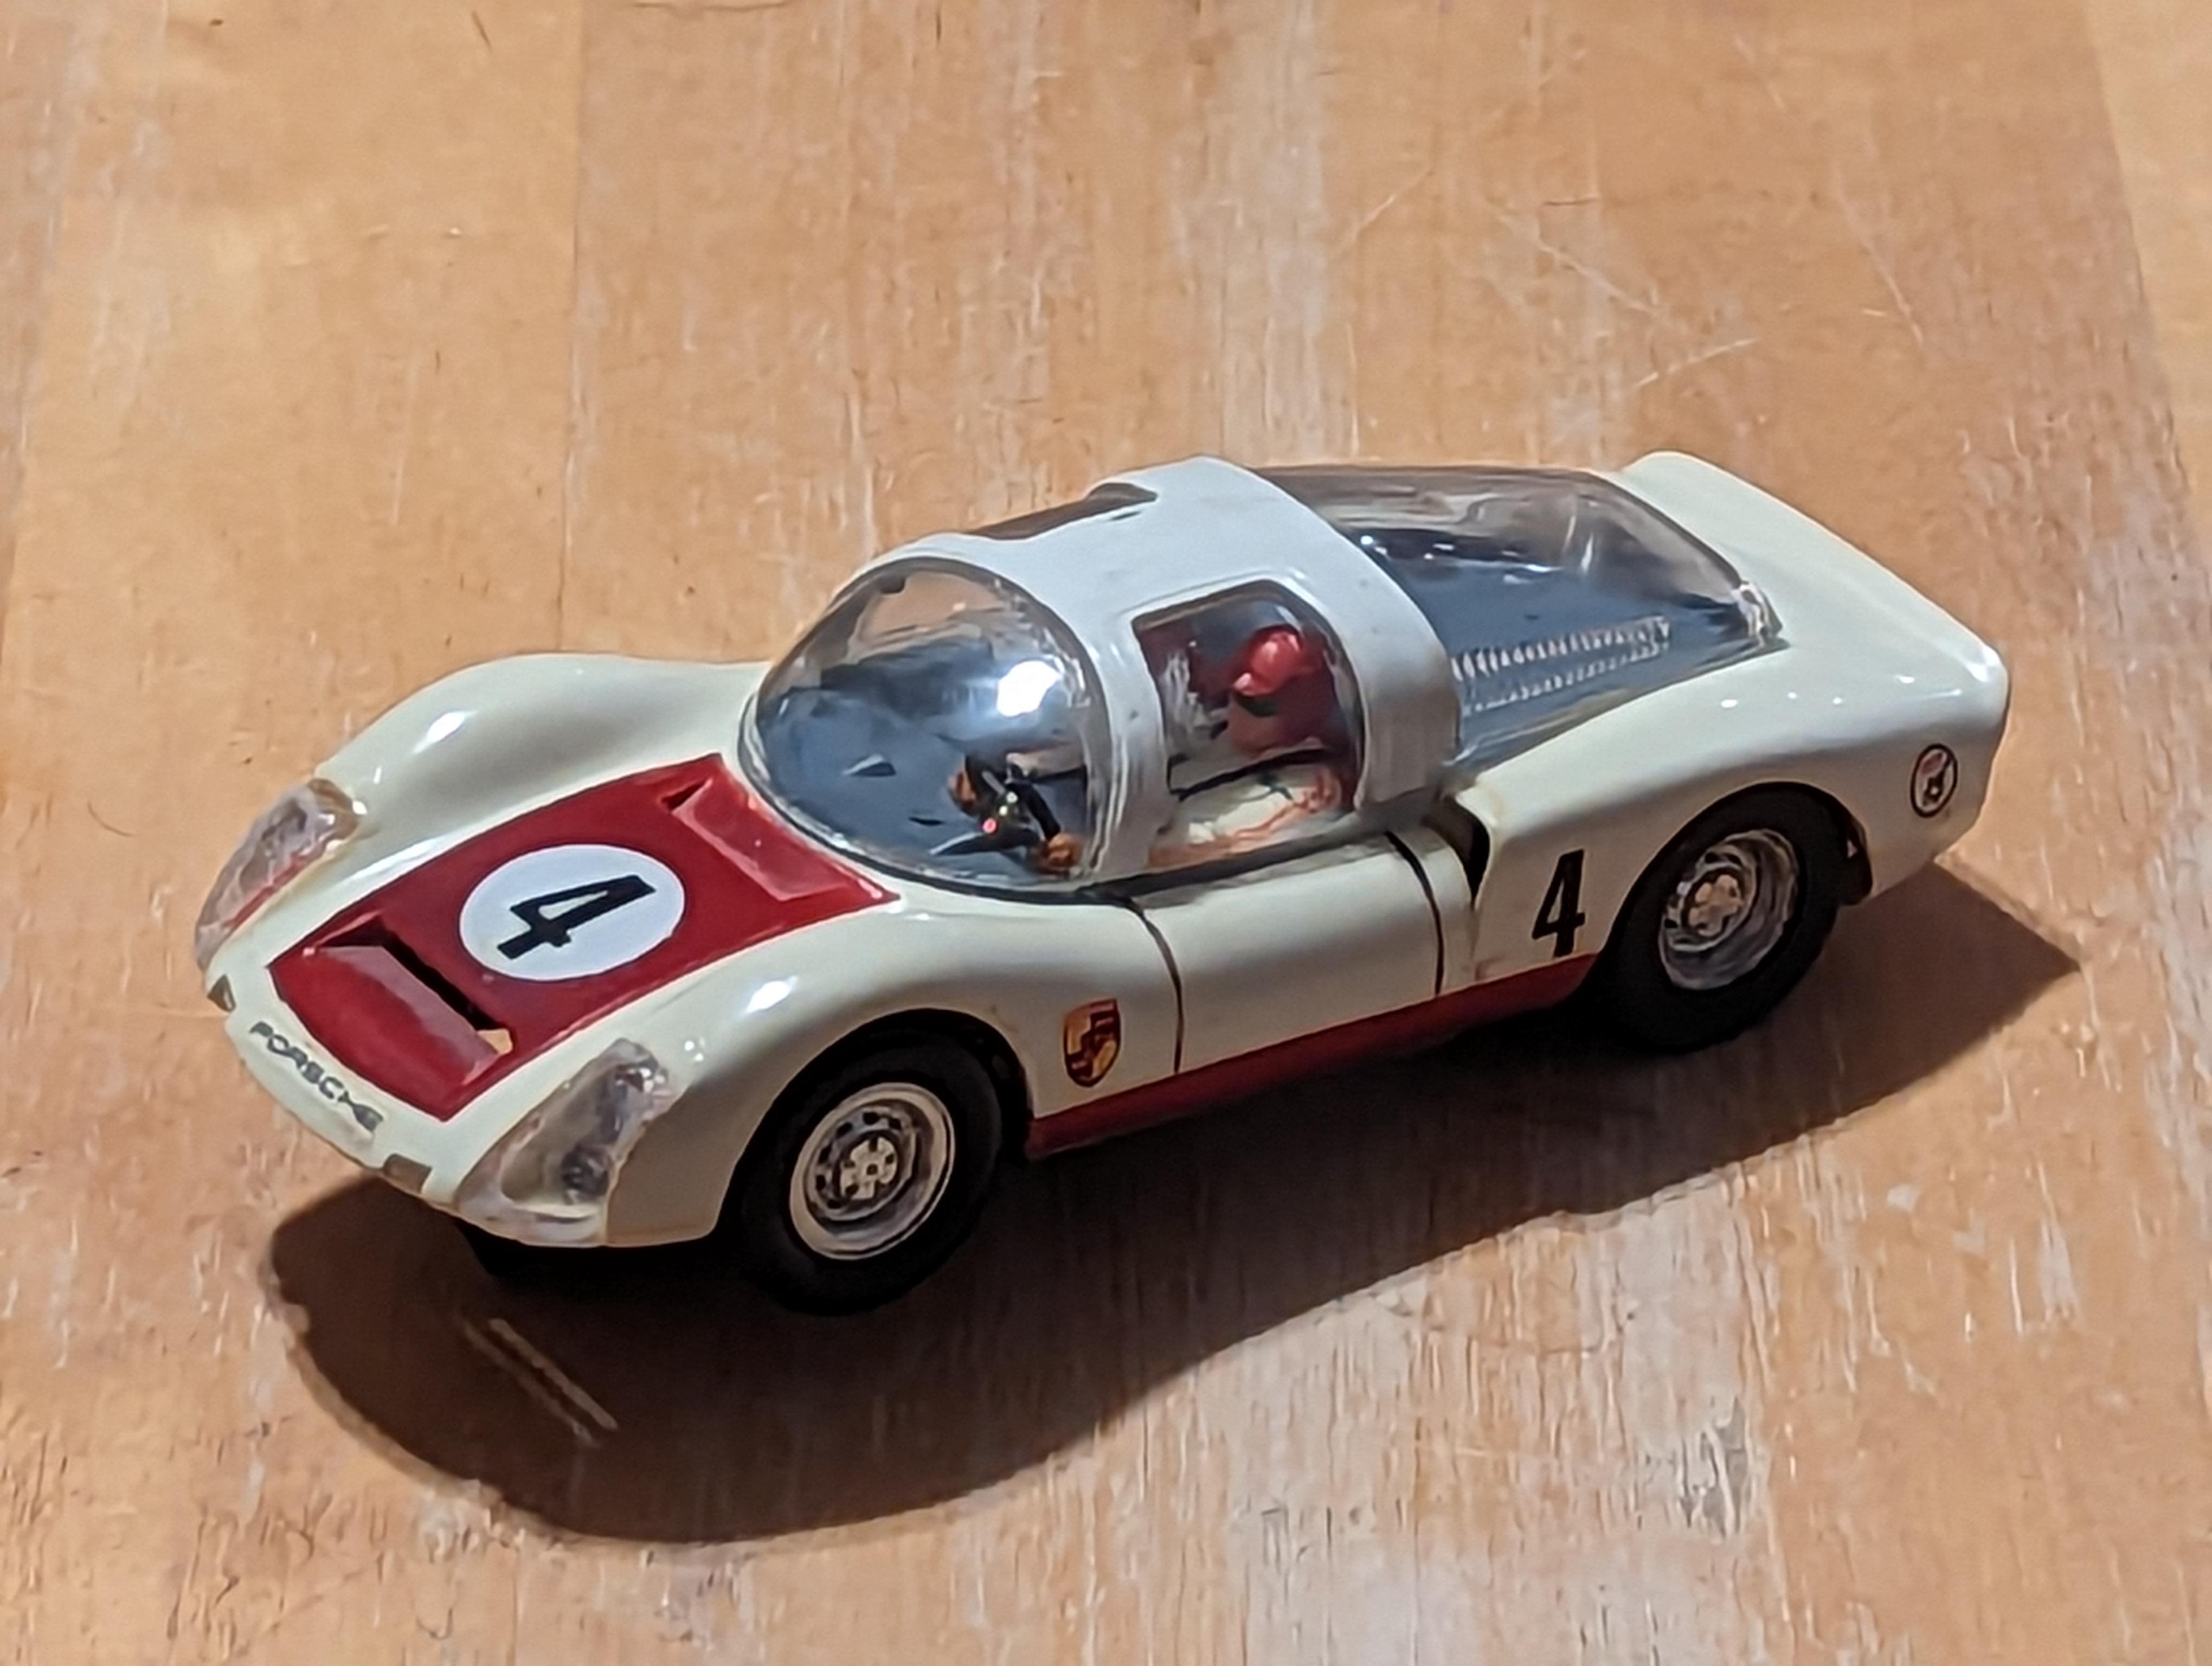 1964 Porsche Carrera 906 - 2nd issue